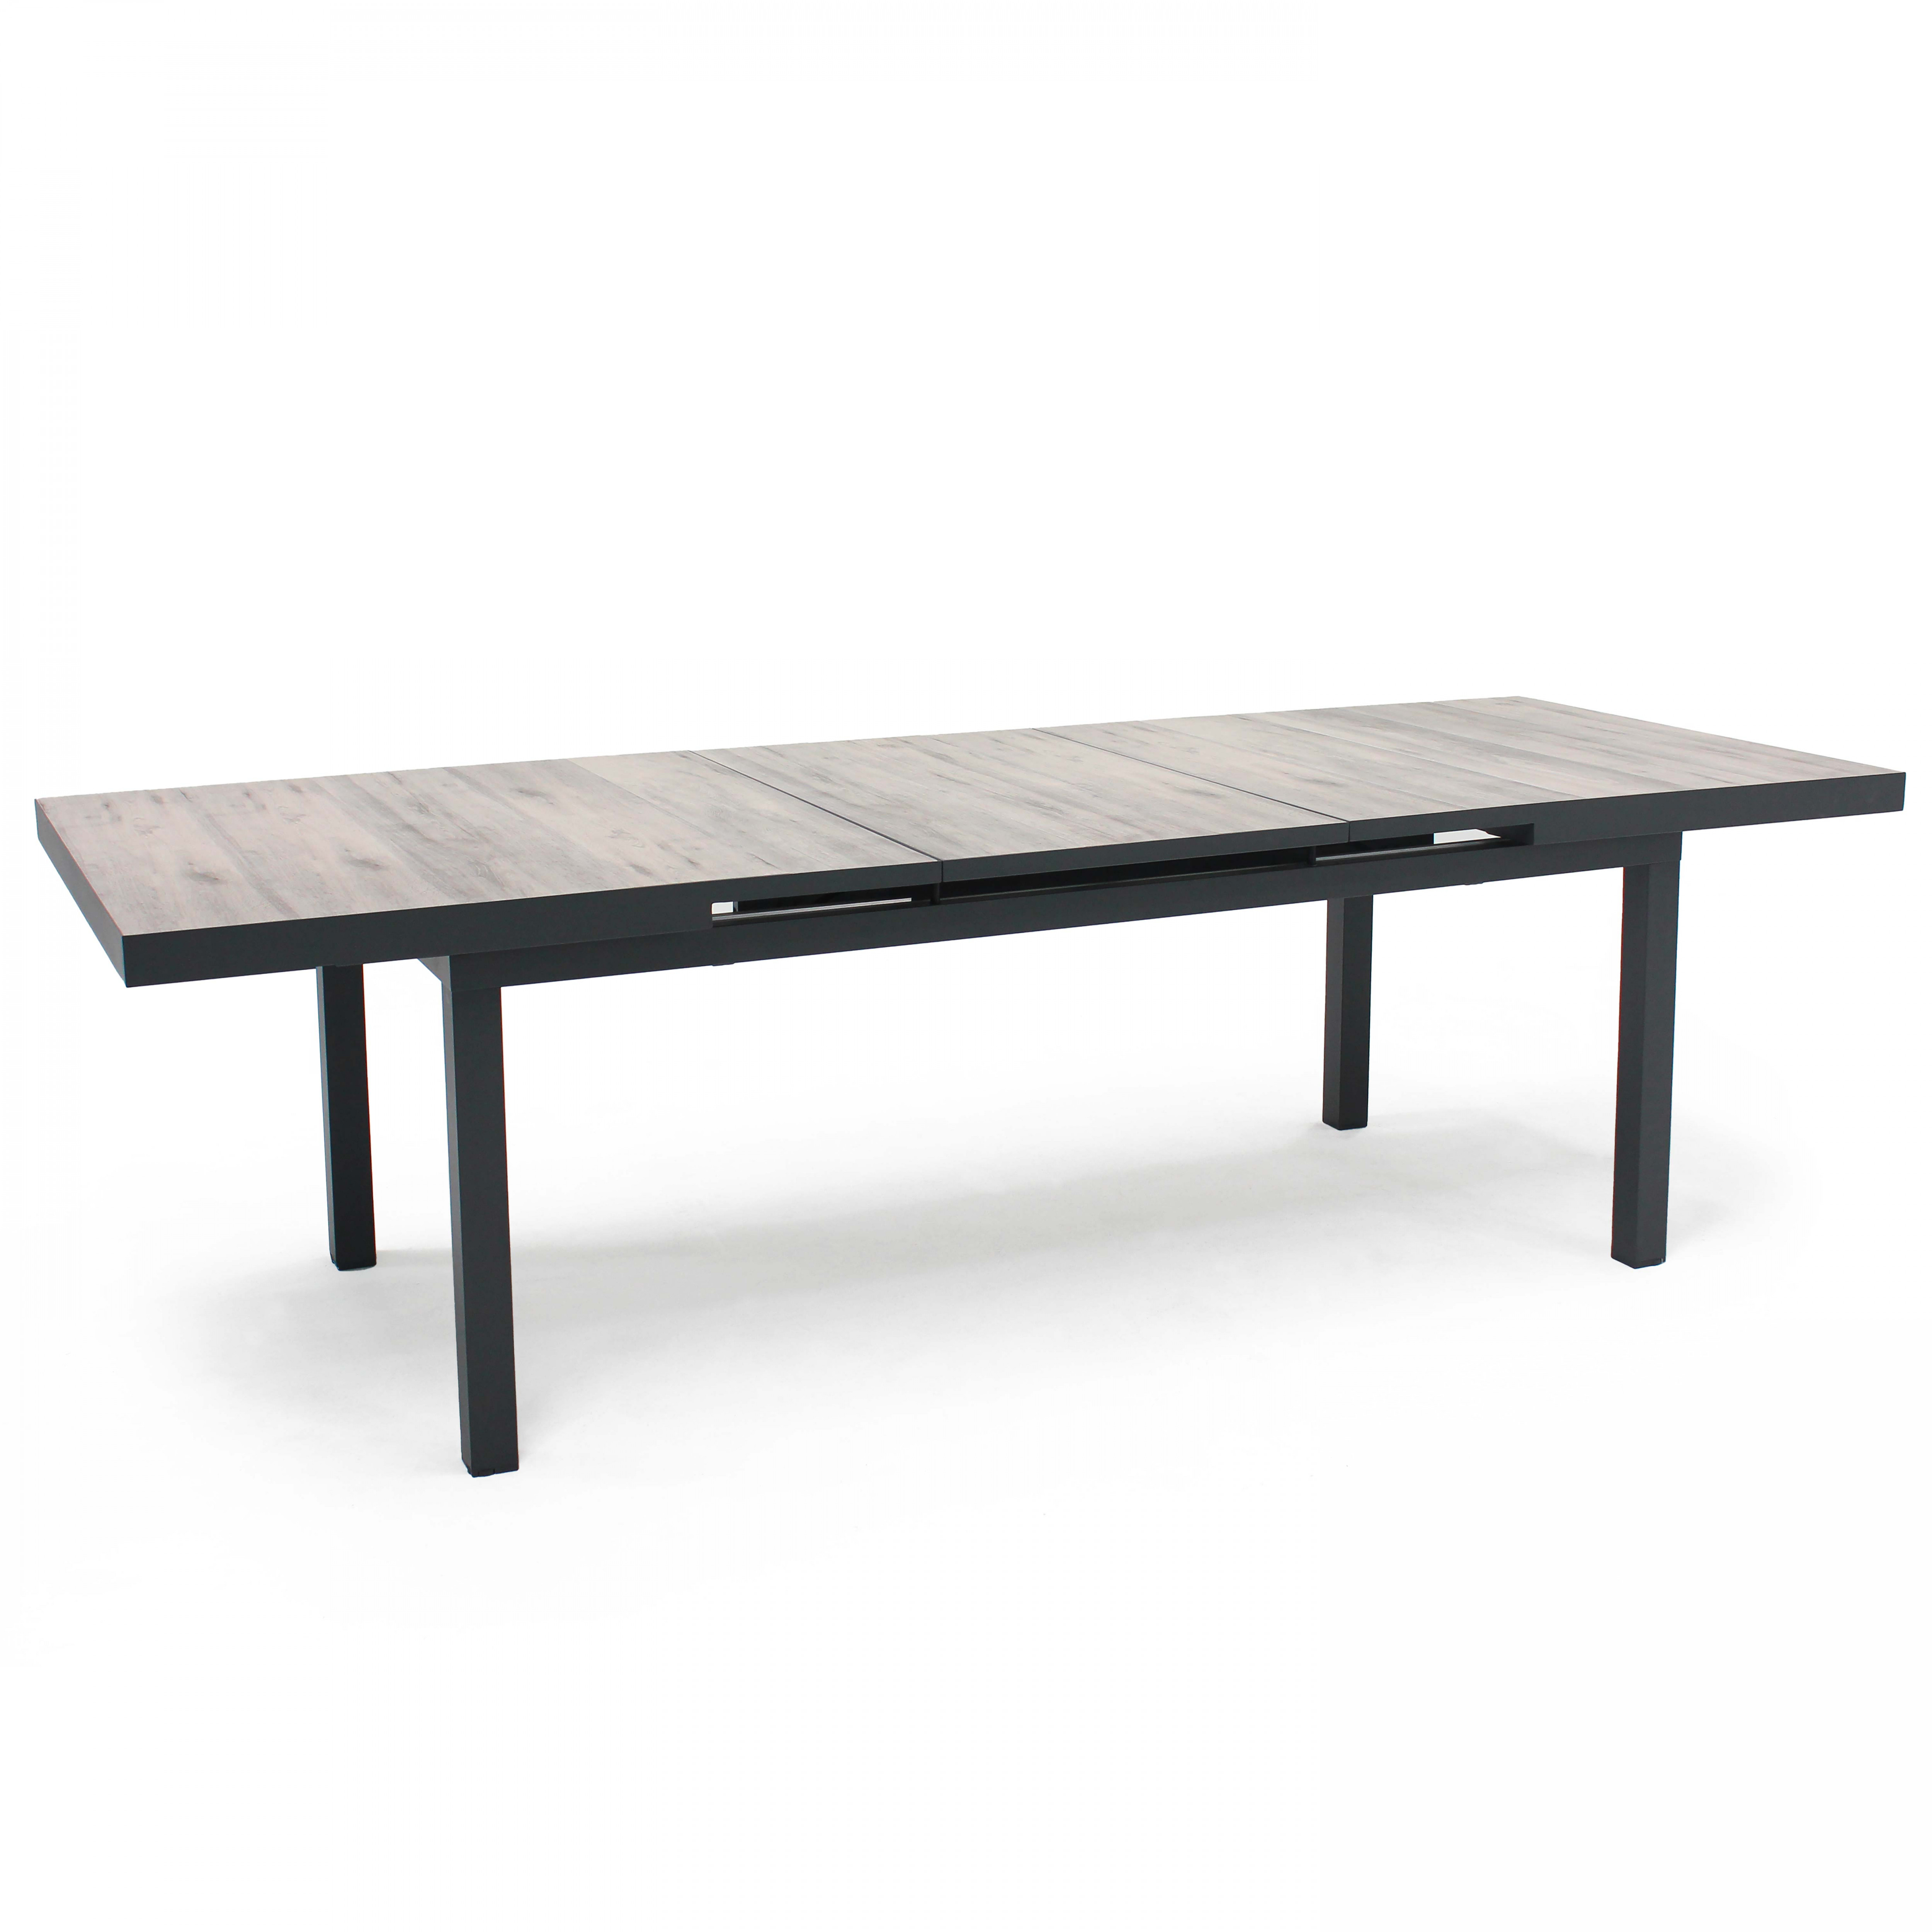 Table extensible en aluminium et céramique pieds droits